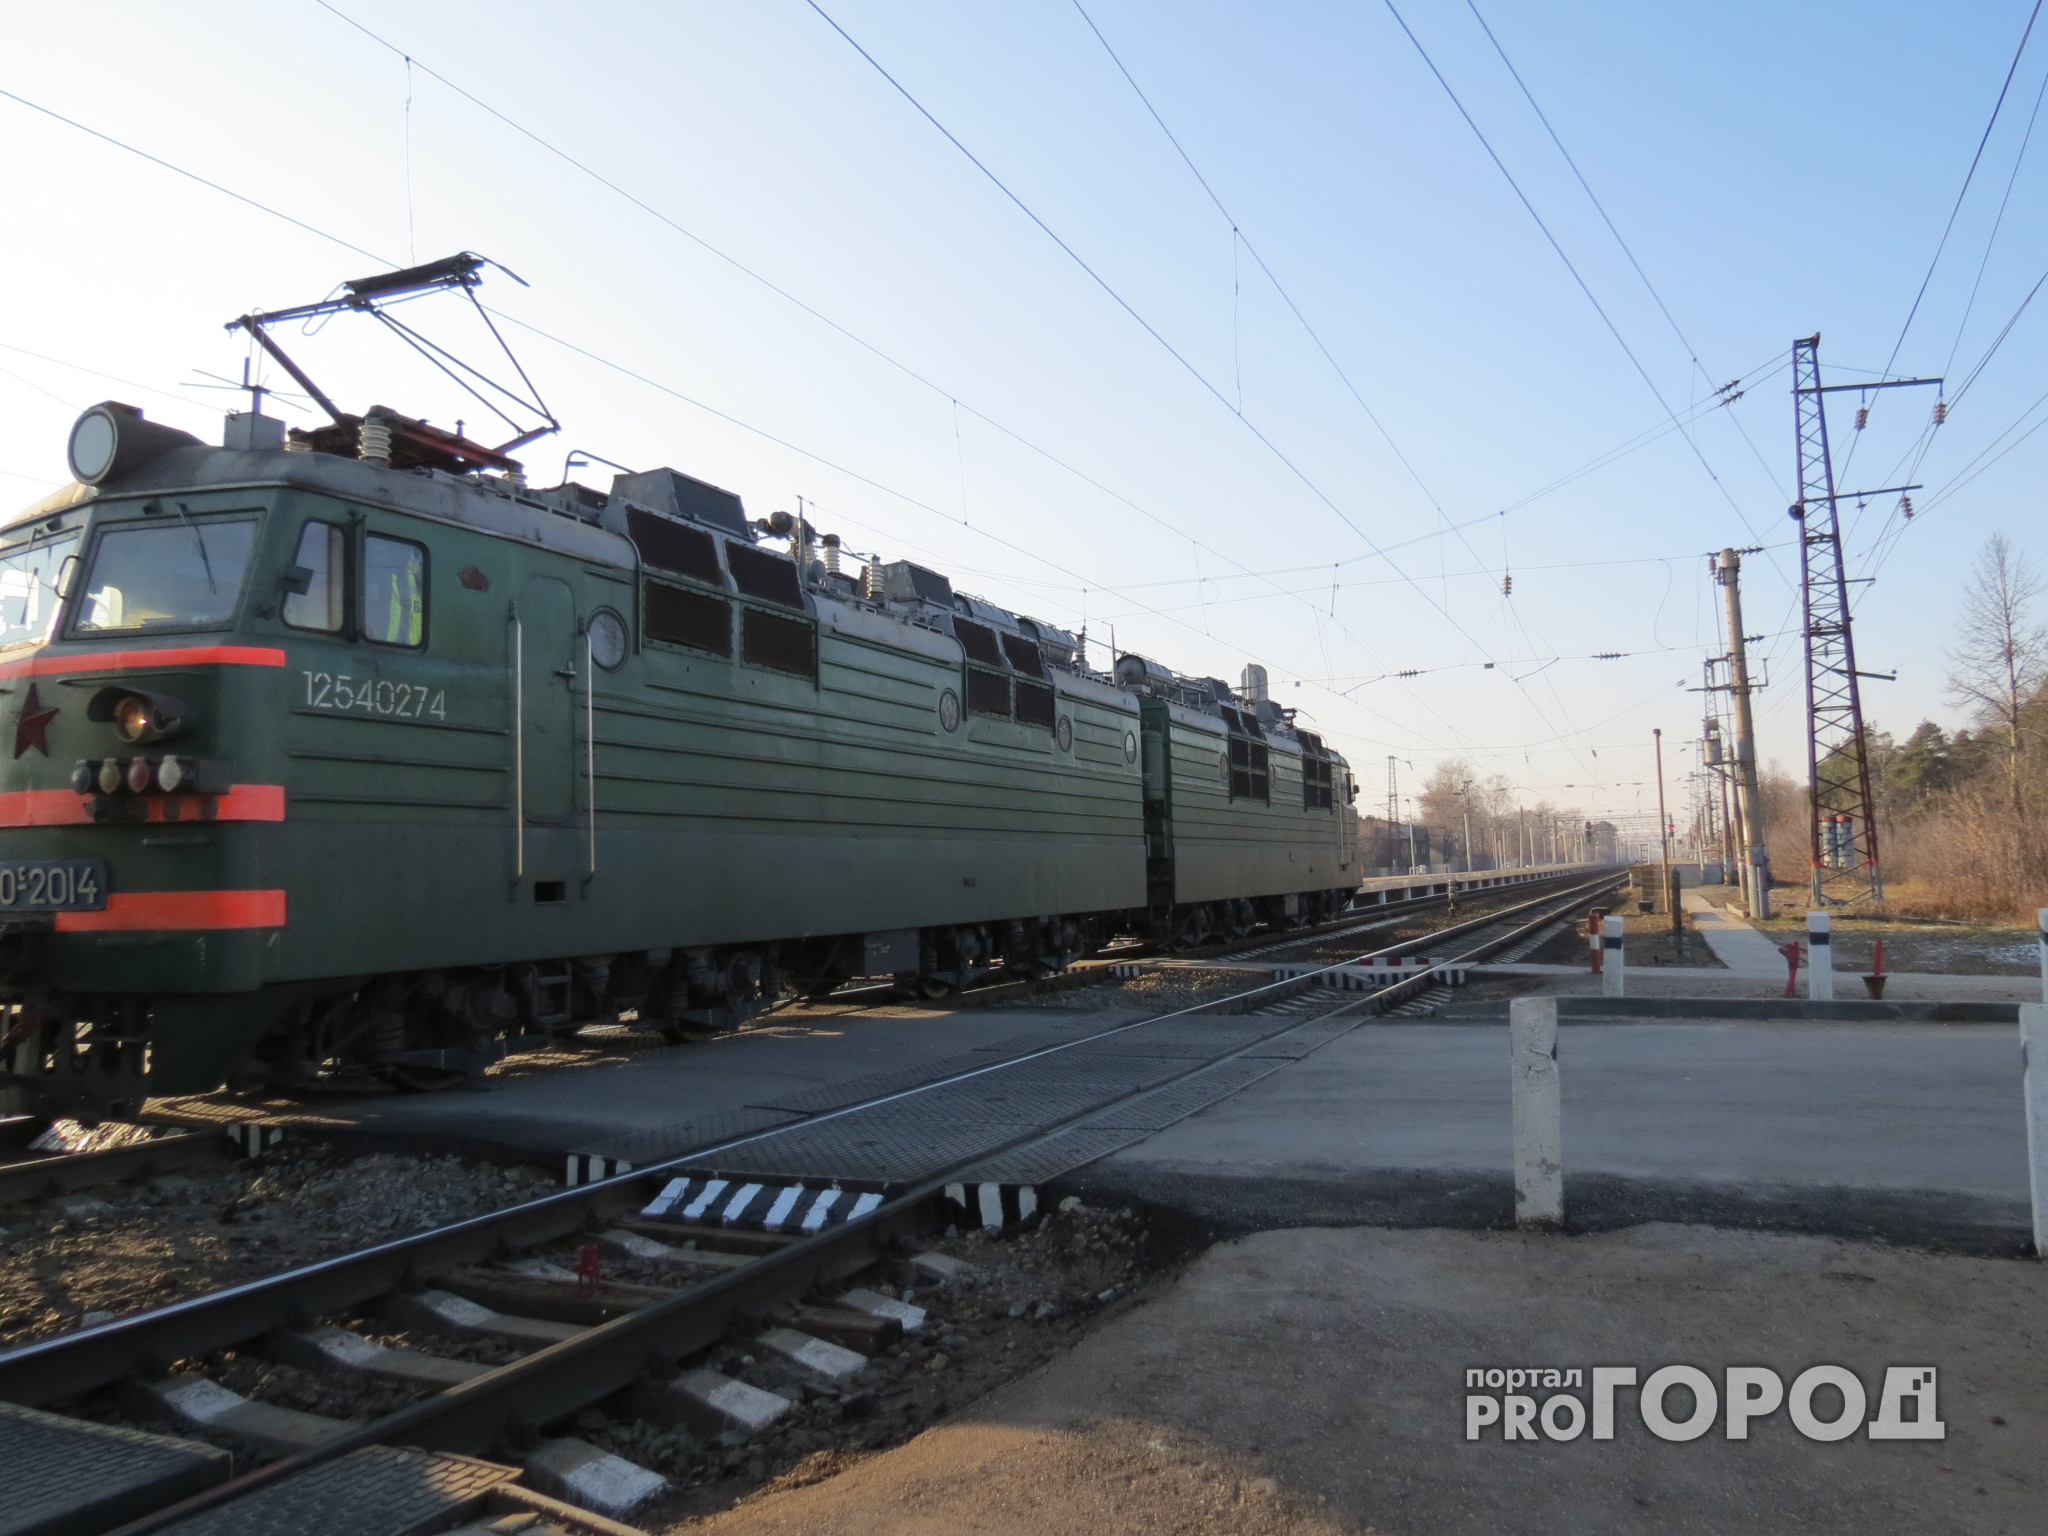 В Ярославле грузовой поезд раздавил мужчину, который шел по путям